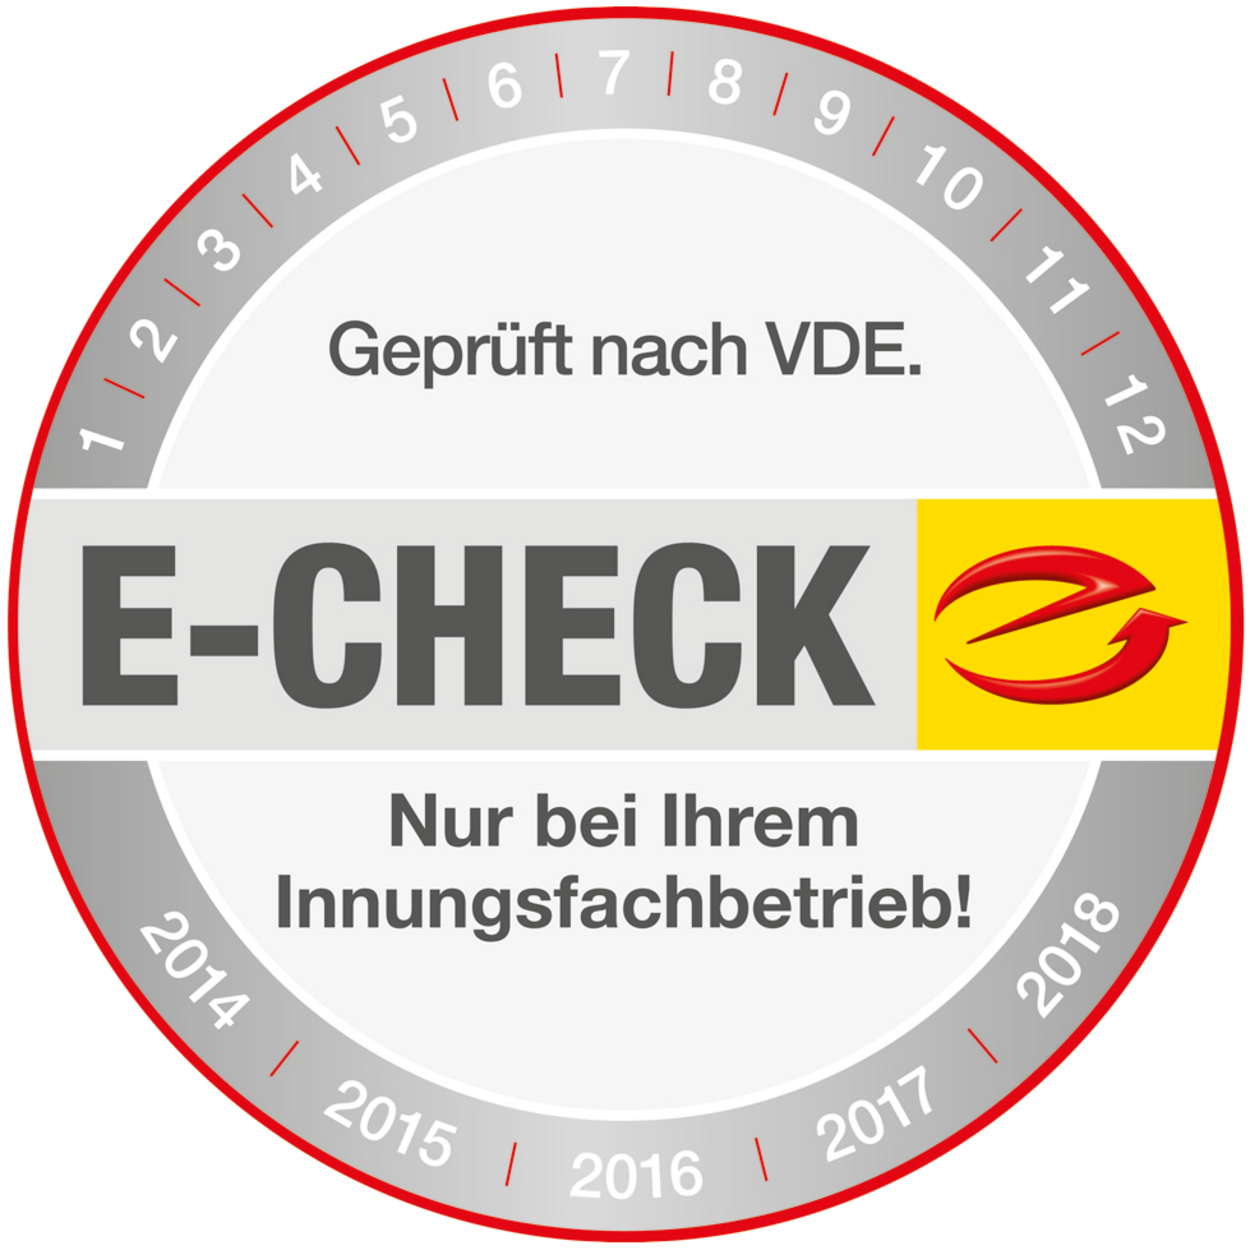 Der E-Check bei Elektro-Wiesener MD GmbH in Magdeburg